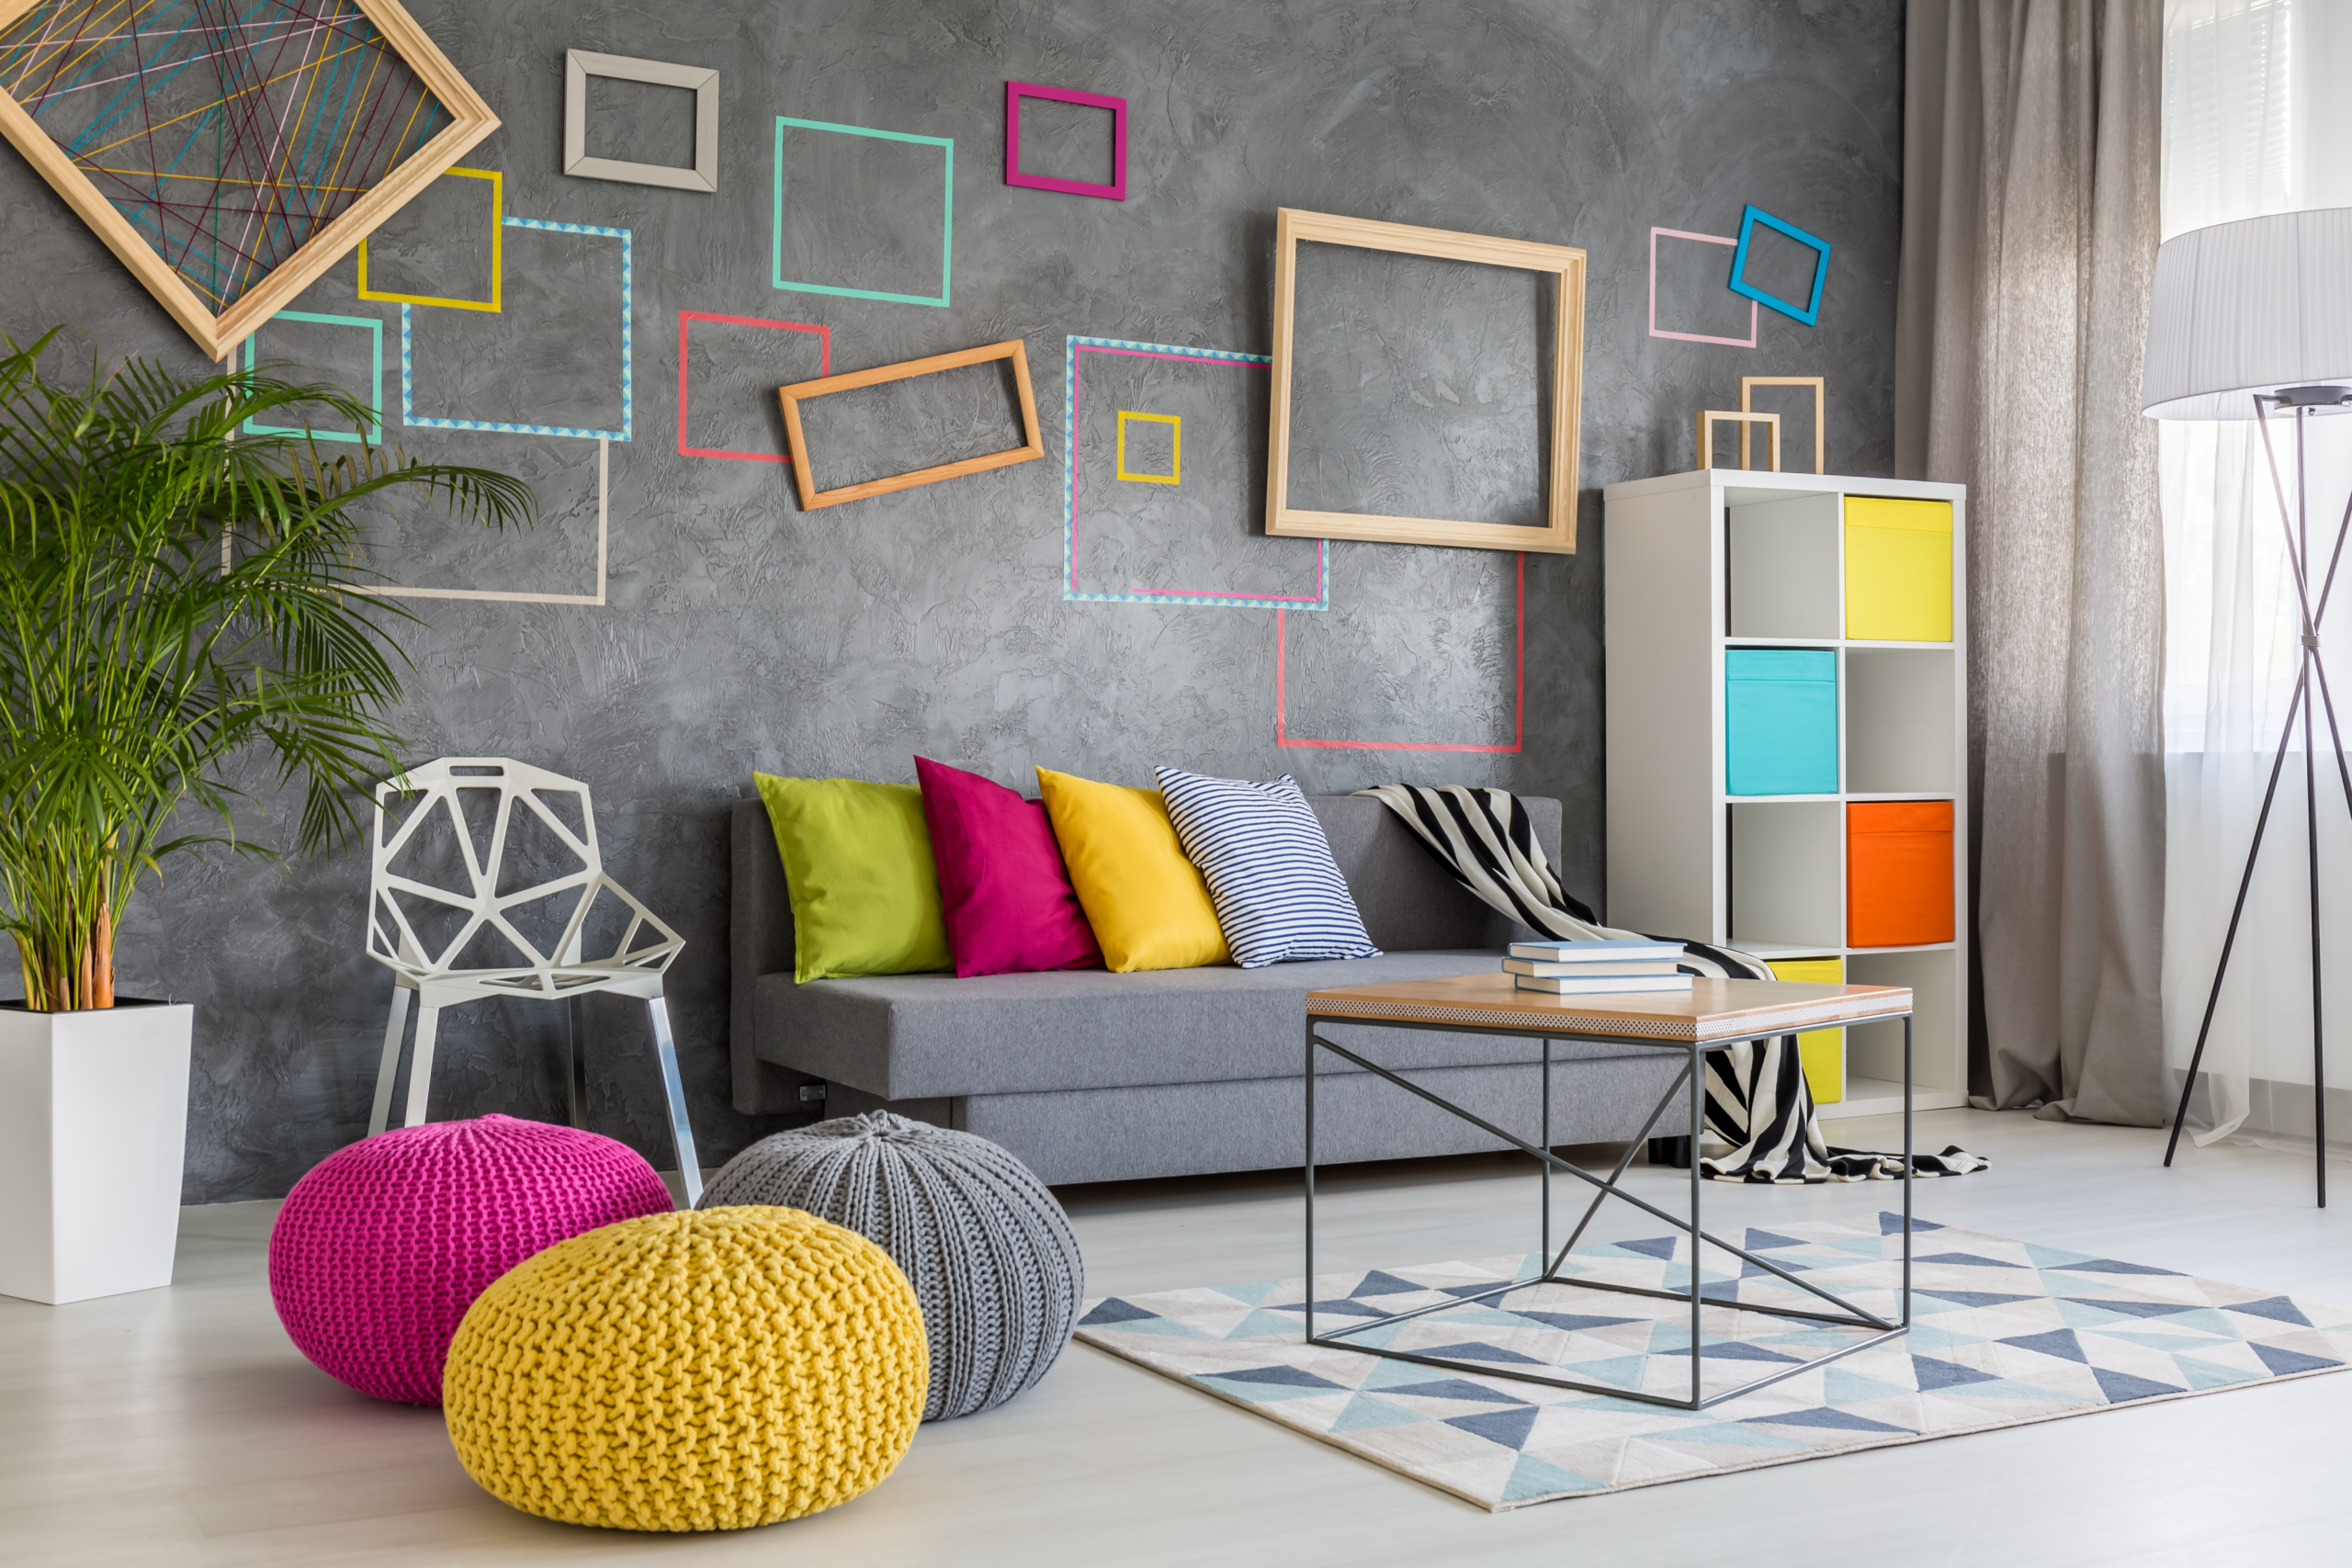 Phong cách tổng thể của không gian và màu sắc phối hợp của các bức tường có thể quyết định bầu không khí của toàn bộ căn phòng. (Ảnh: Shutterstock)